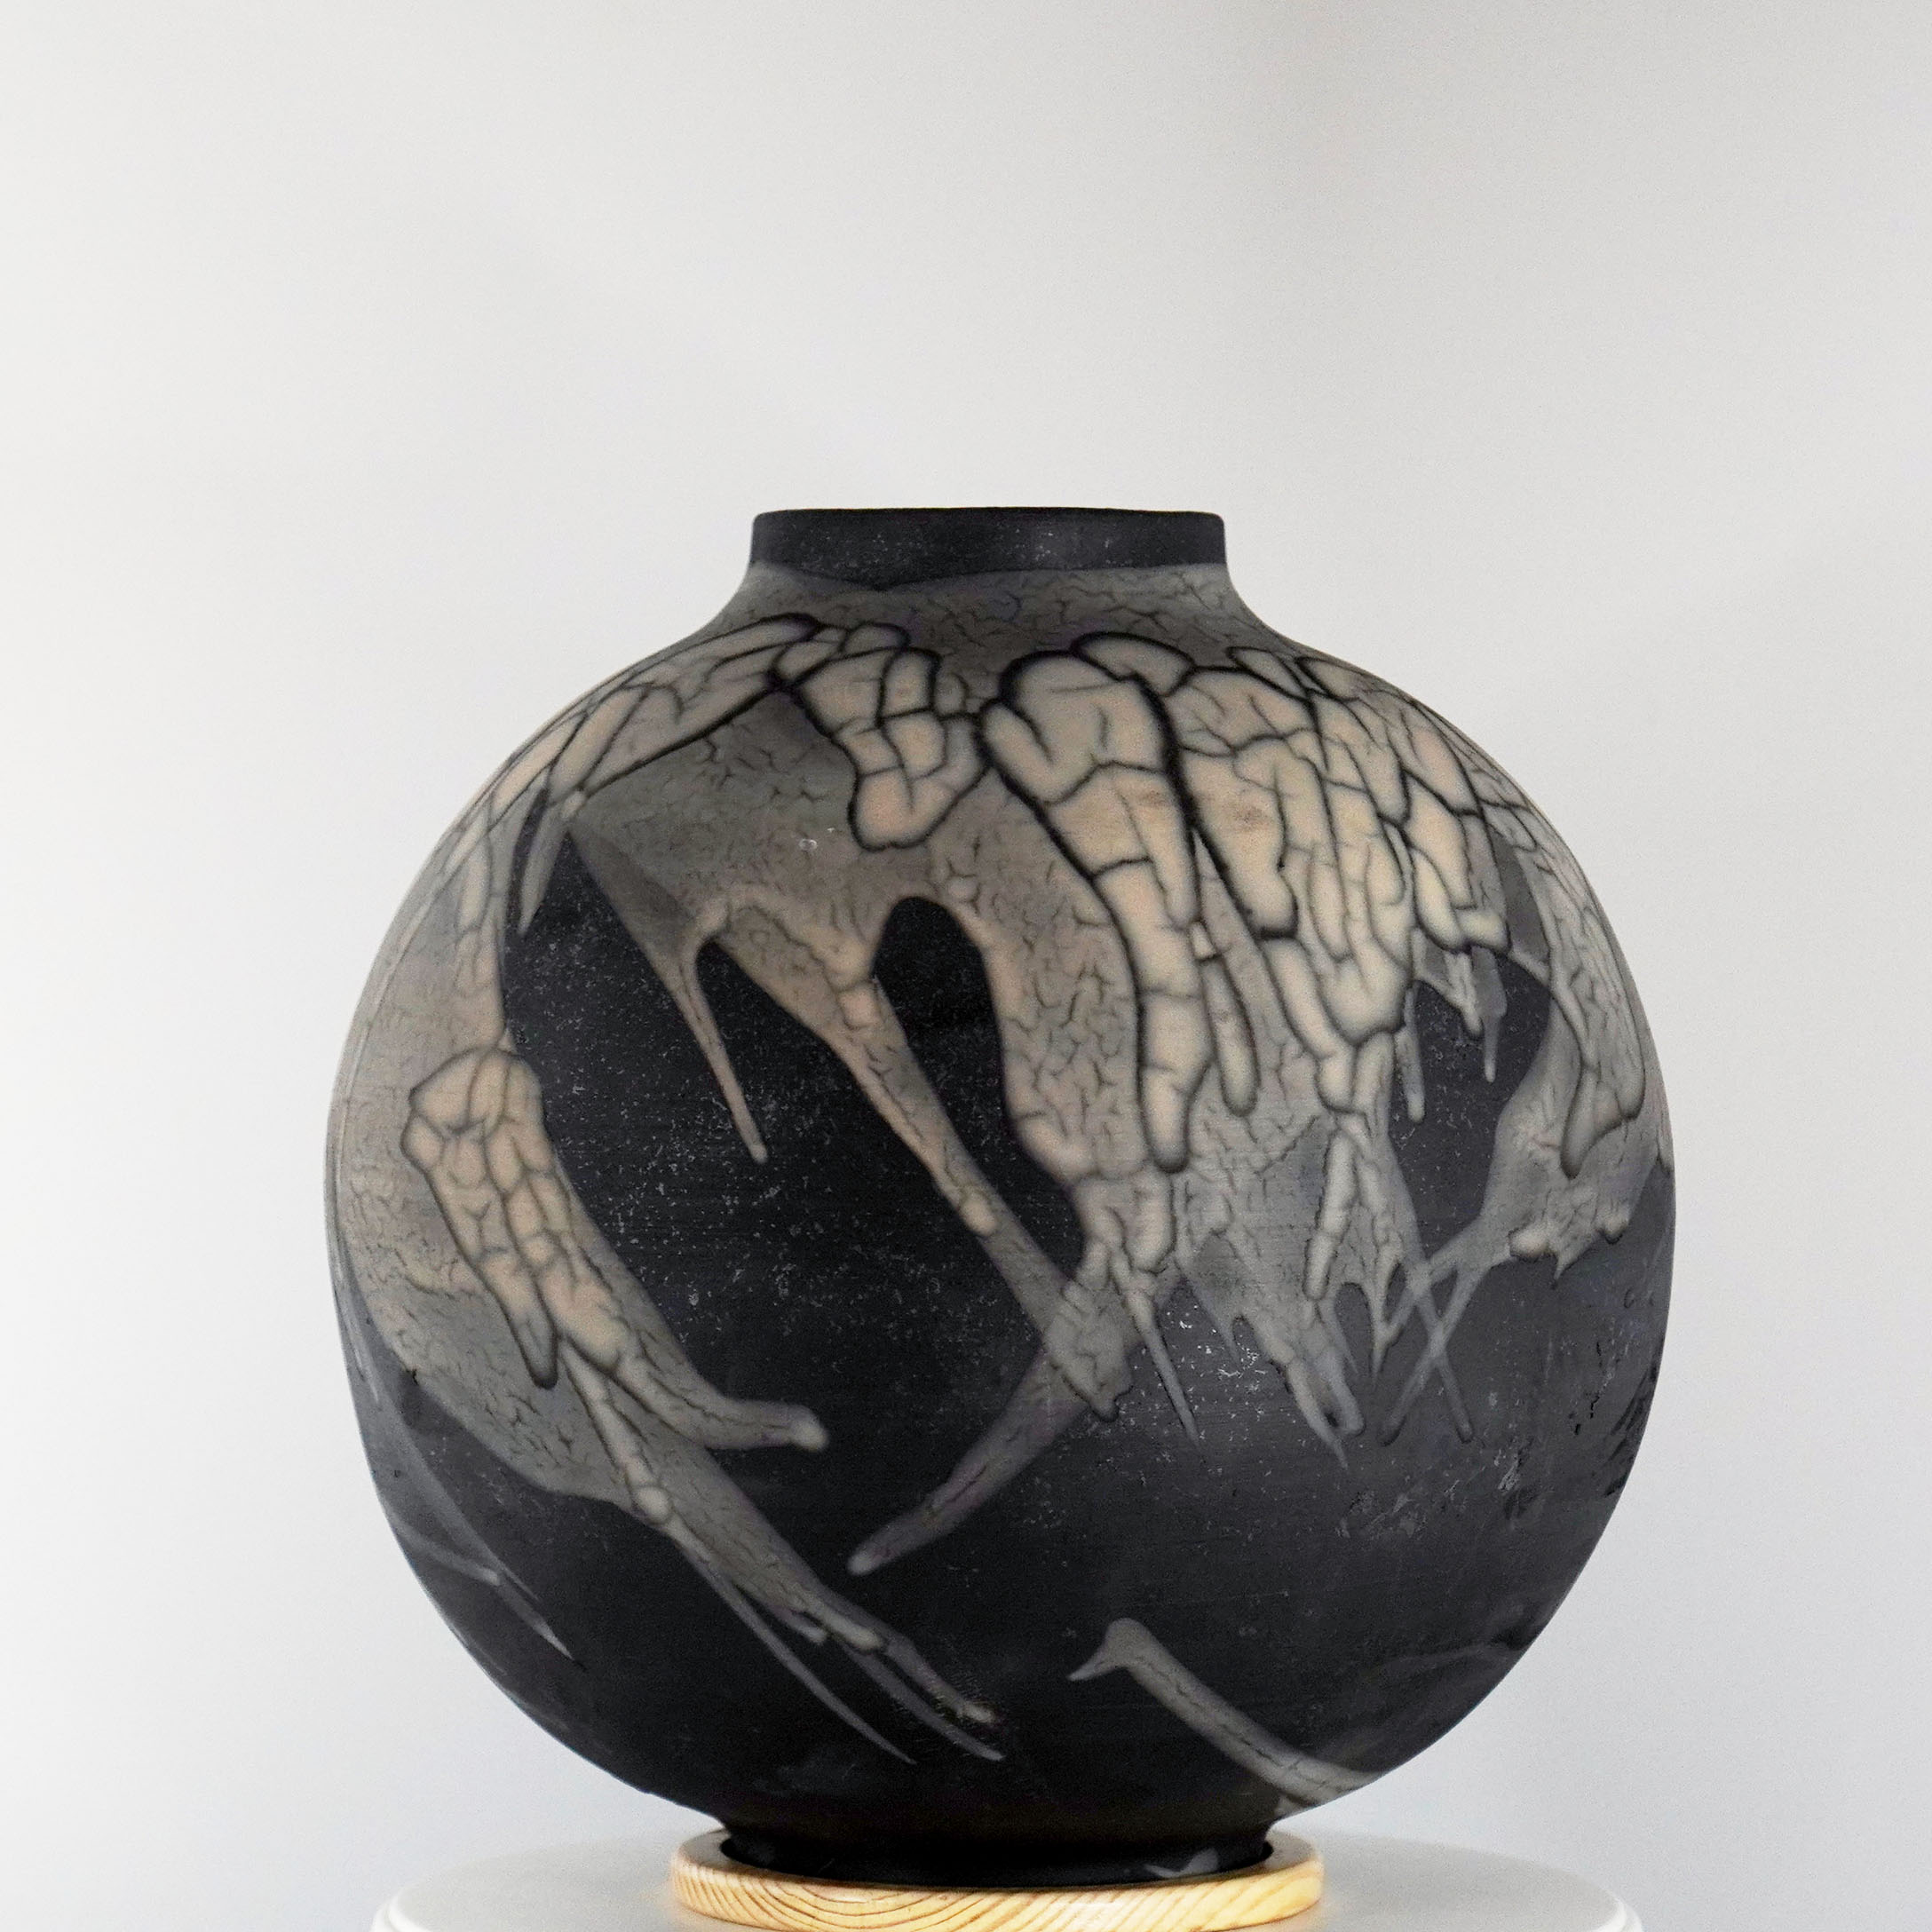 RAAQUU Smoked Raku Large Globe Ceramic Art Vase S/N0000360